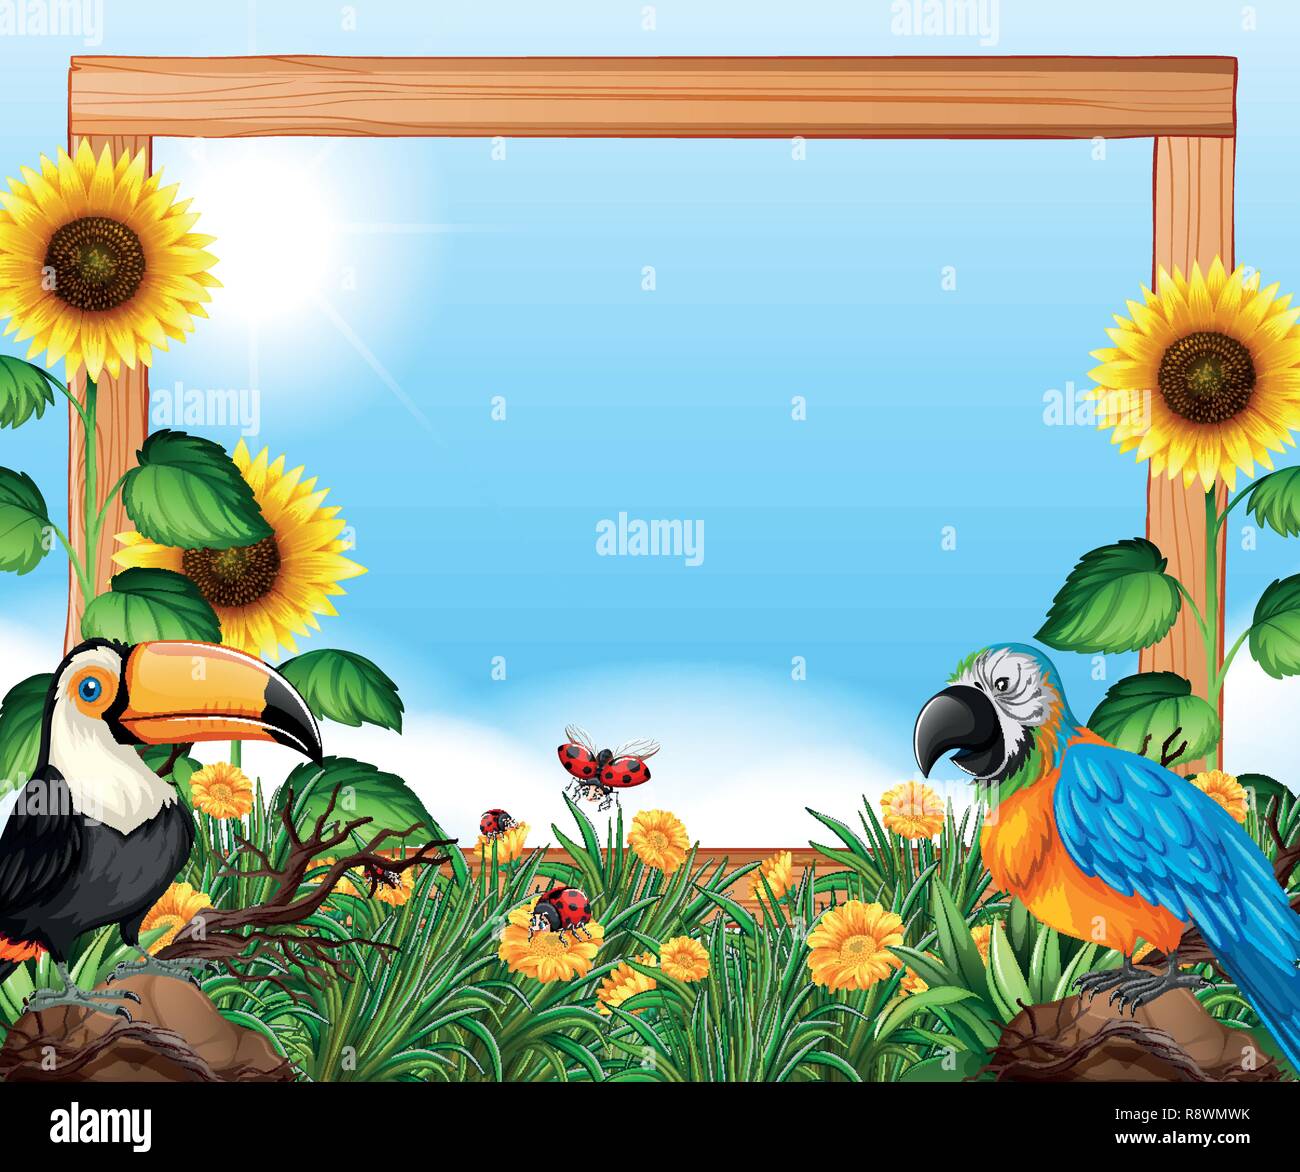 vedtage arabisk Skråstreg Birds on nature wooden frame illustration Stock Vector Image & Art - Alamy